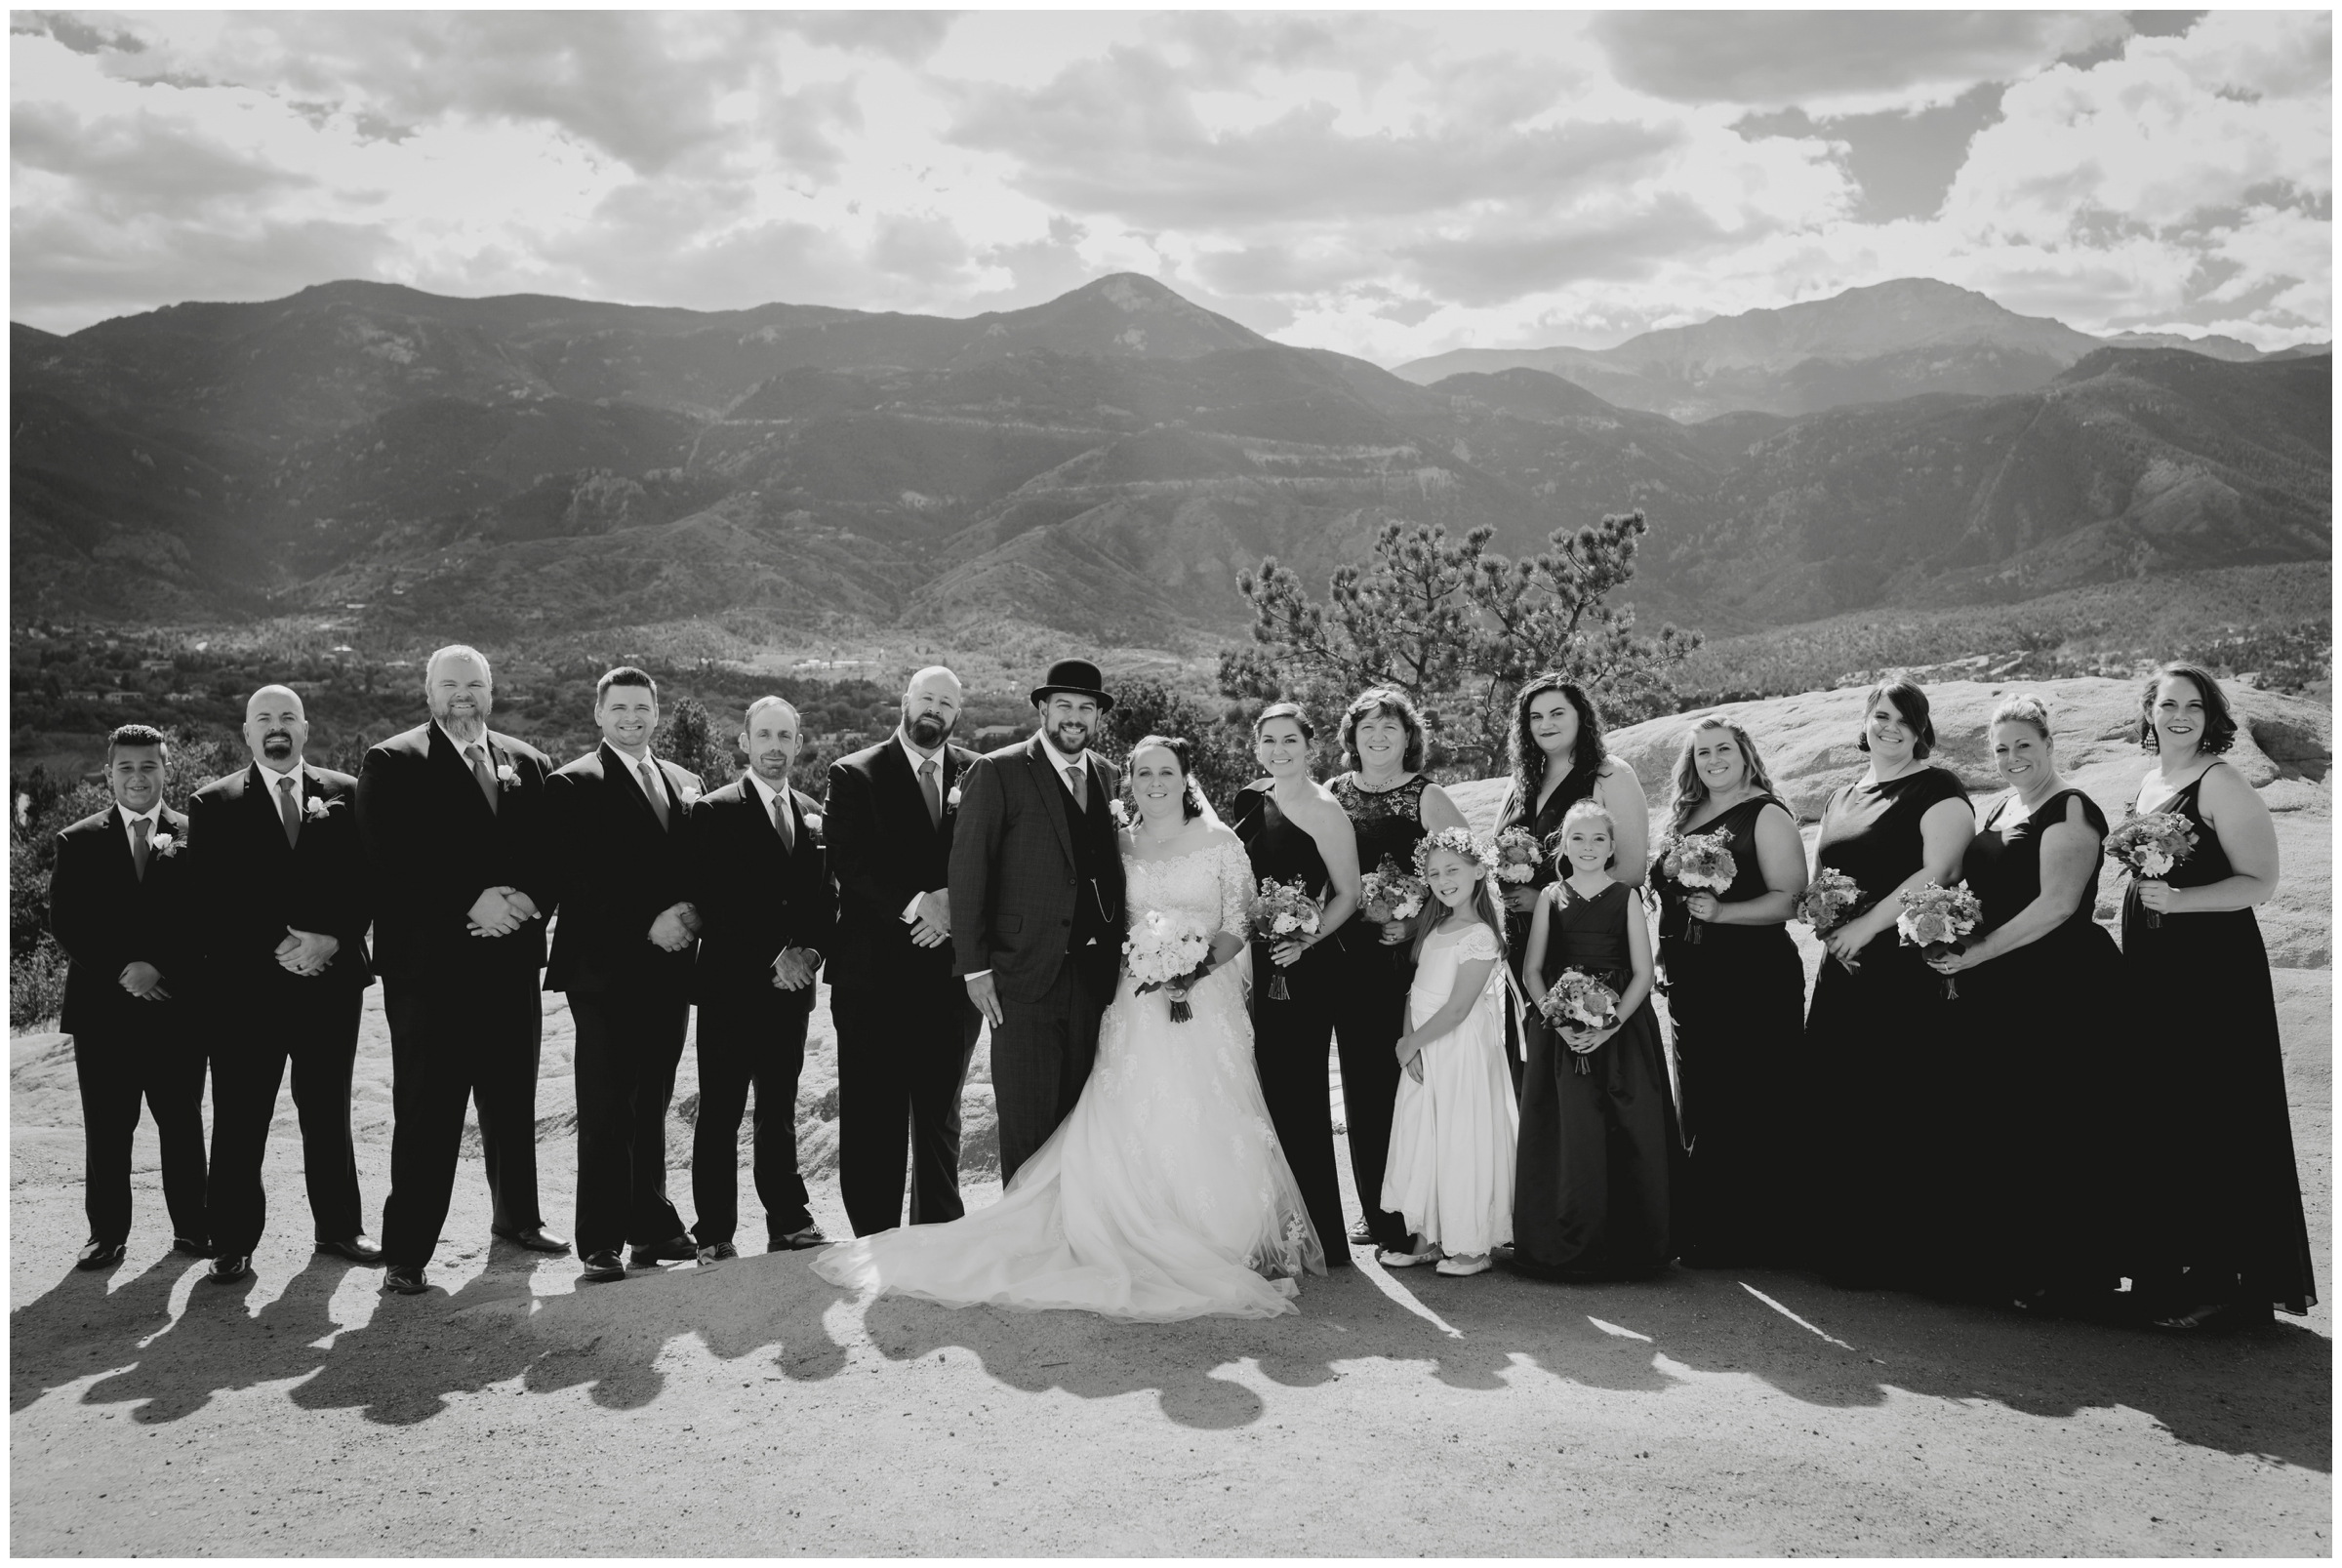 Colorado Springs wedding photography at Garden of the Gods